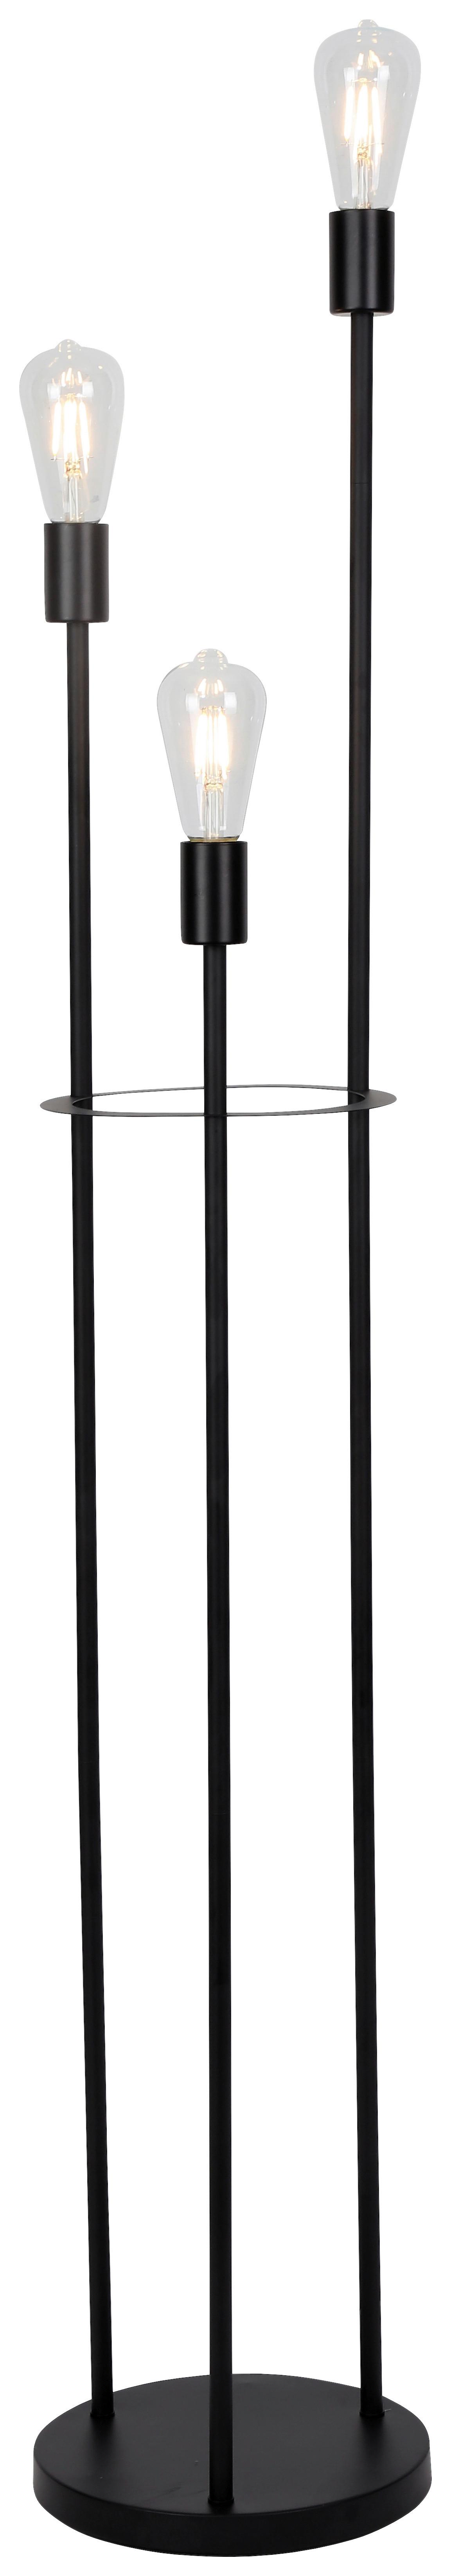 Stojacia Lampa Molly, 3xe27, 230v - čierna, Konvenčný, kov (25/140cm) - Modern Living